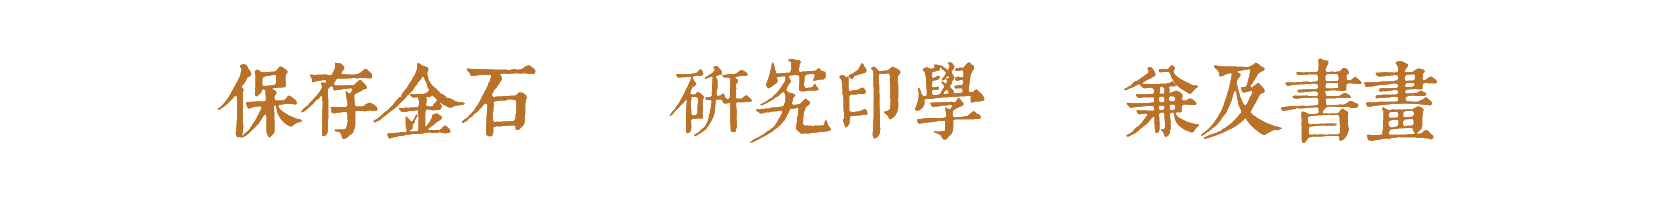 西泠印社主题创作印章入藏中国共产党历史展览馆 崇真艺客